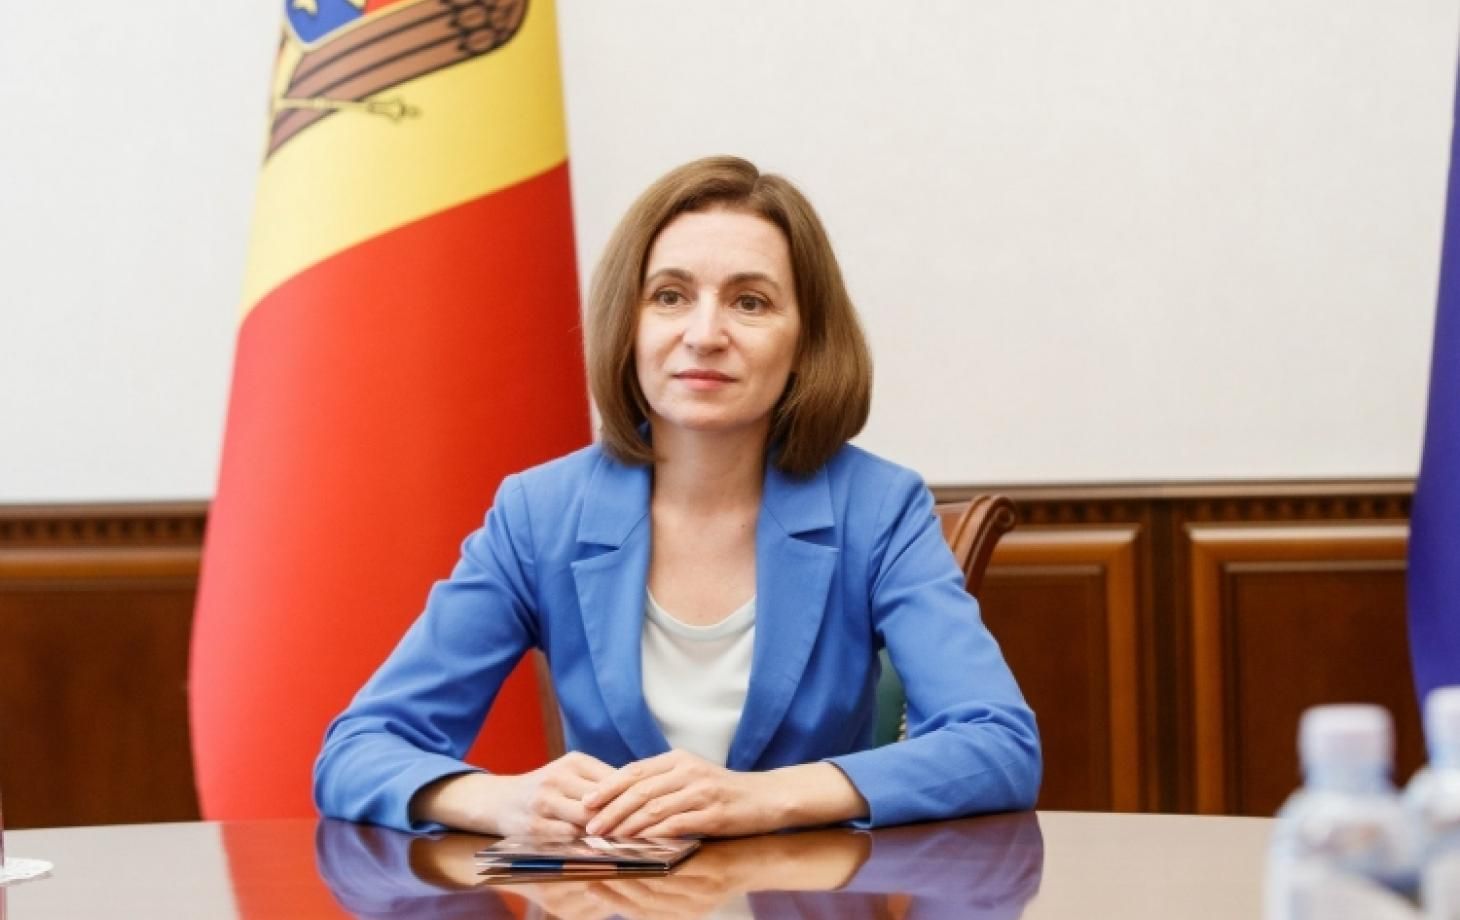 Ситуация в Молдове - за что Санду поблагодарила украинцев